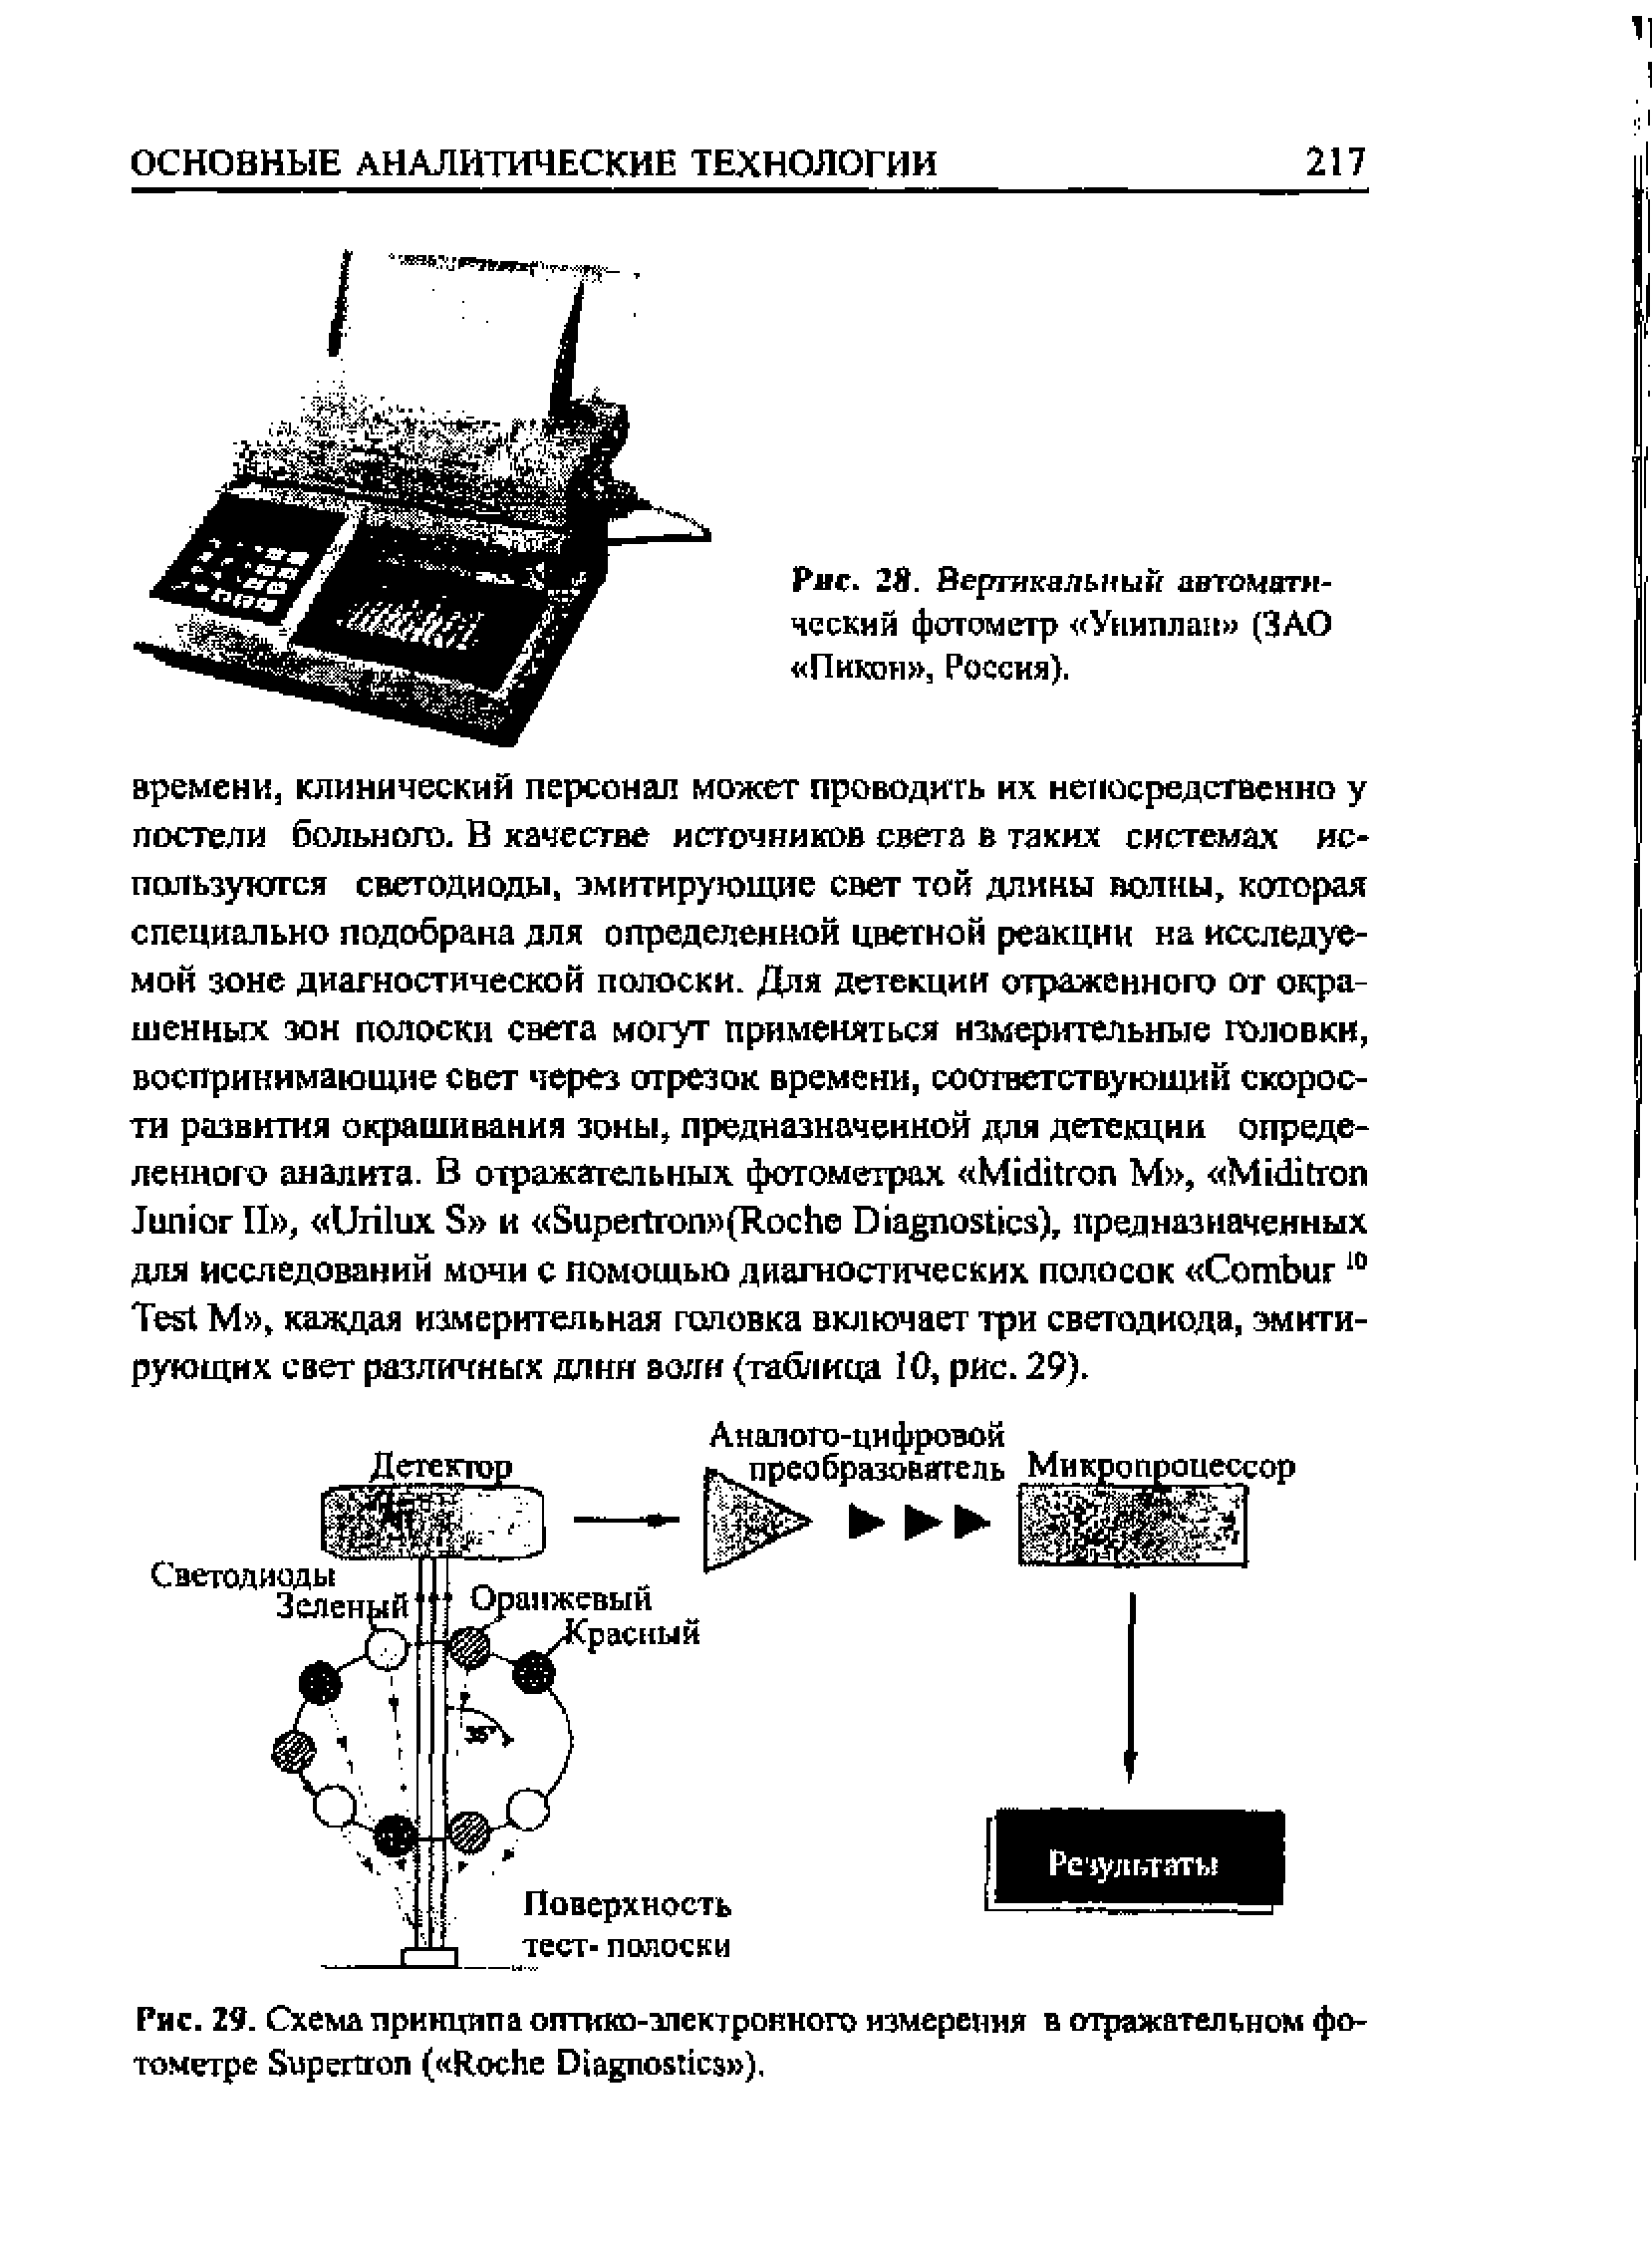 Рис. 29. Схема принципа оптико-электронного измерения в отражательном фотометре S ( R D ).